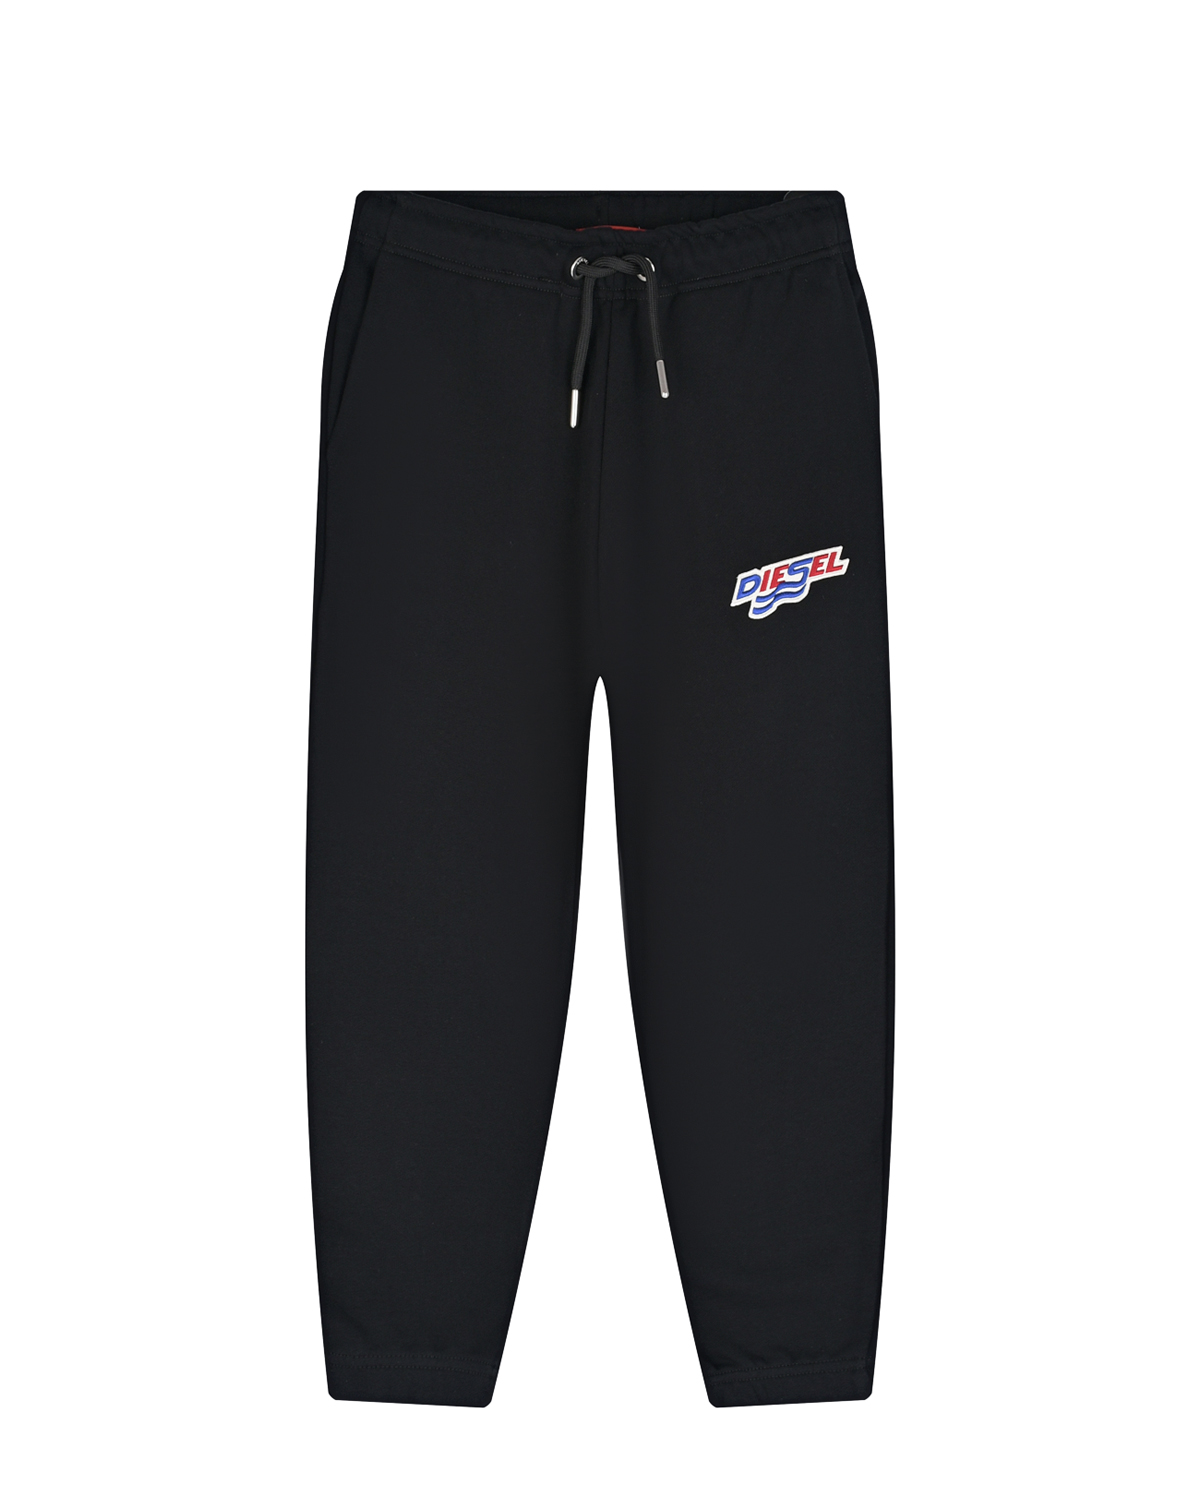 Черные спортивные брюки с вышитым лого Diesel детские, размер 128, цвет черный - фото 1